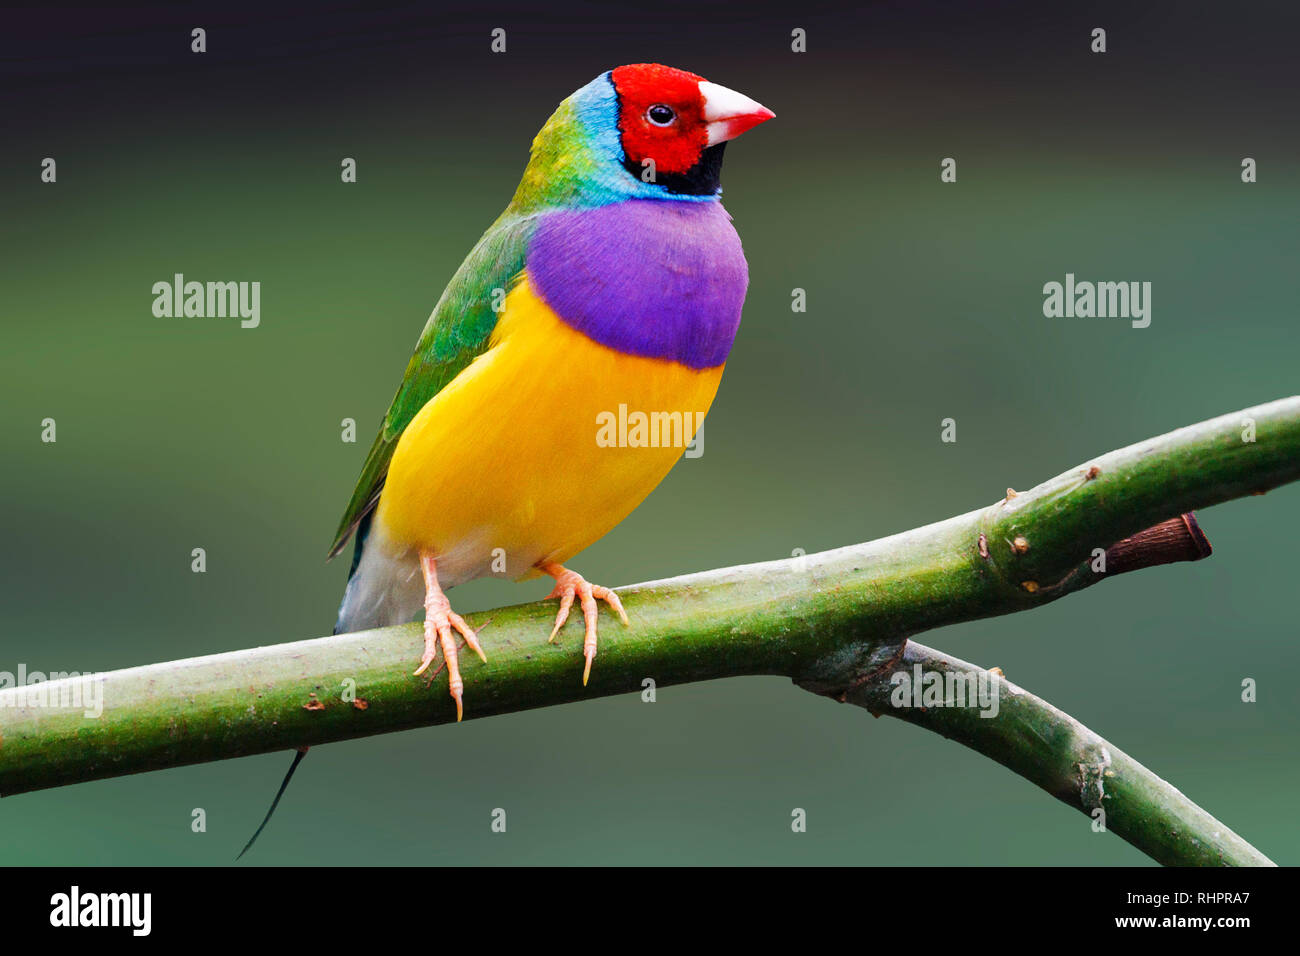 Bunter Vogel sitzt auf einem grünen Hintergrund, wilde Natur  Stockfotografie - Alamy